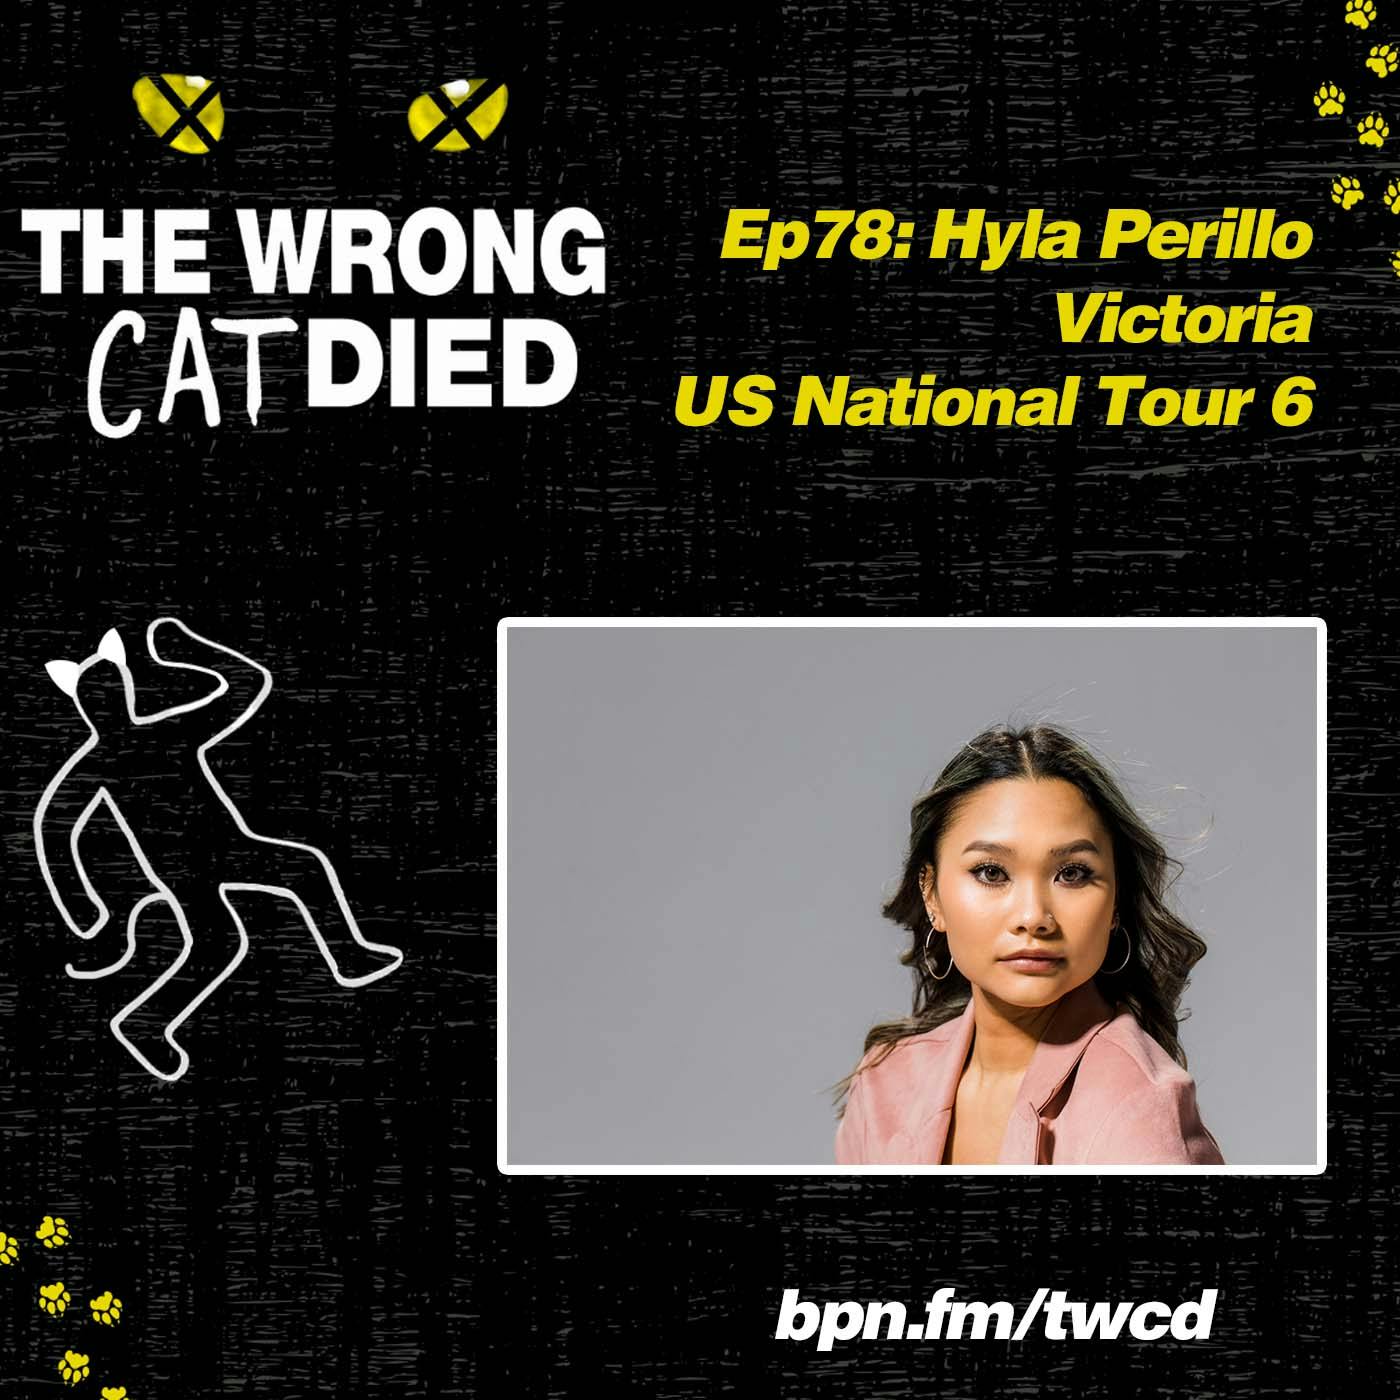 Ep78 - Hyla Perillo, Victoria US on National Tour 6